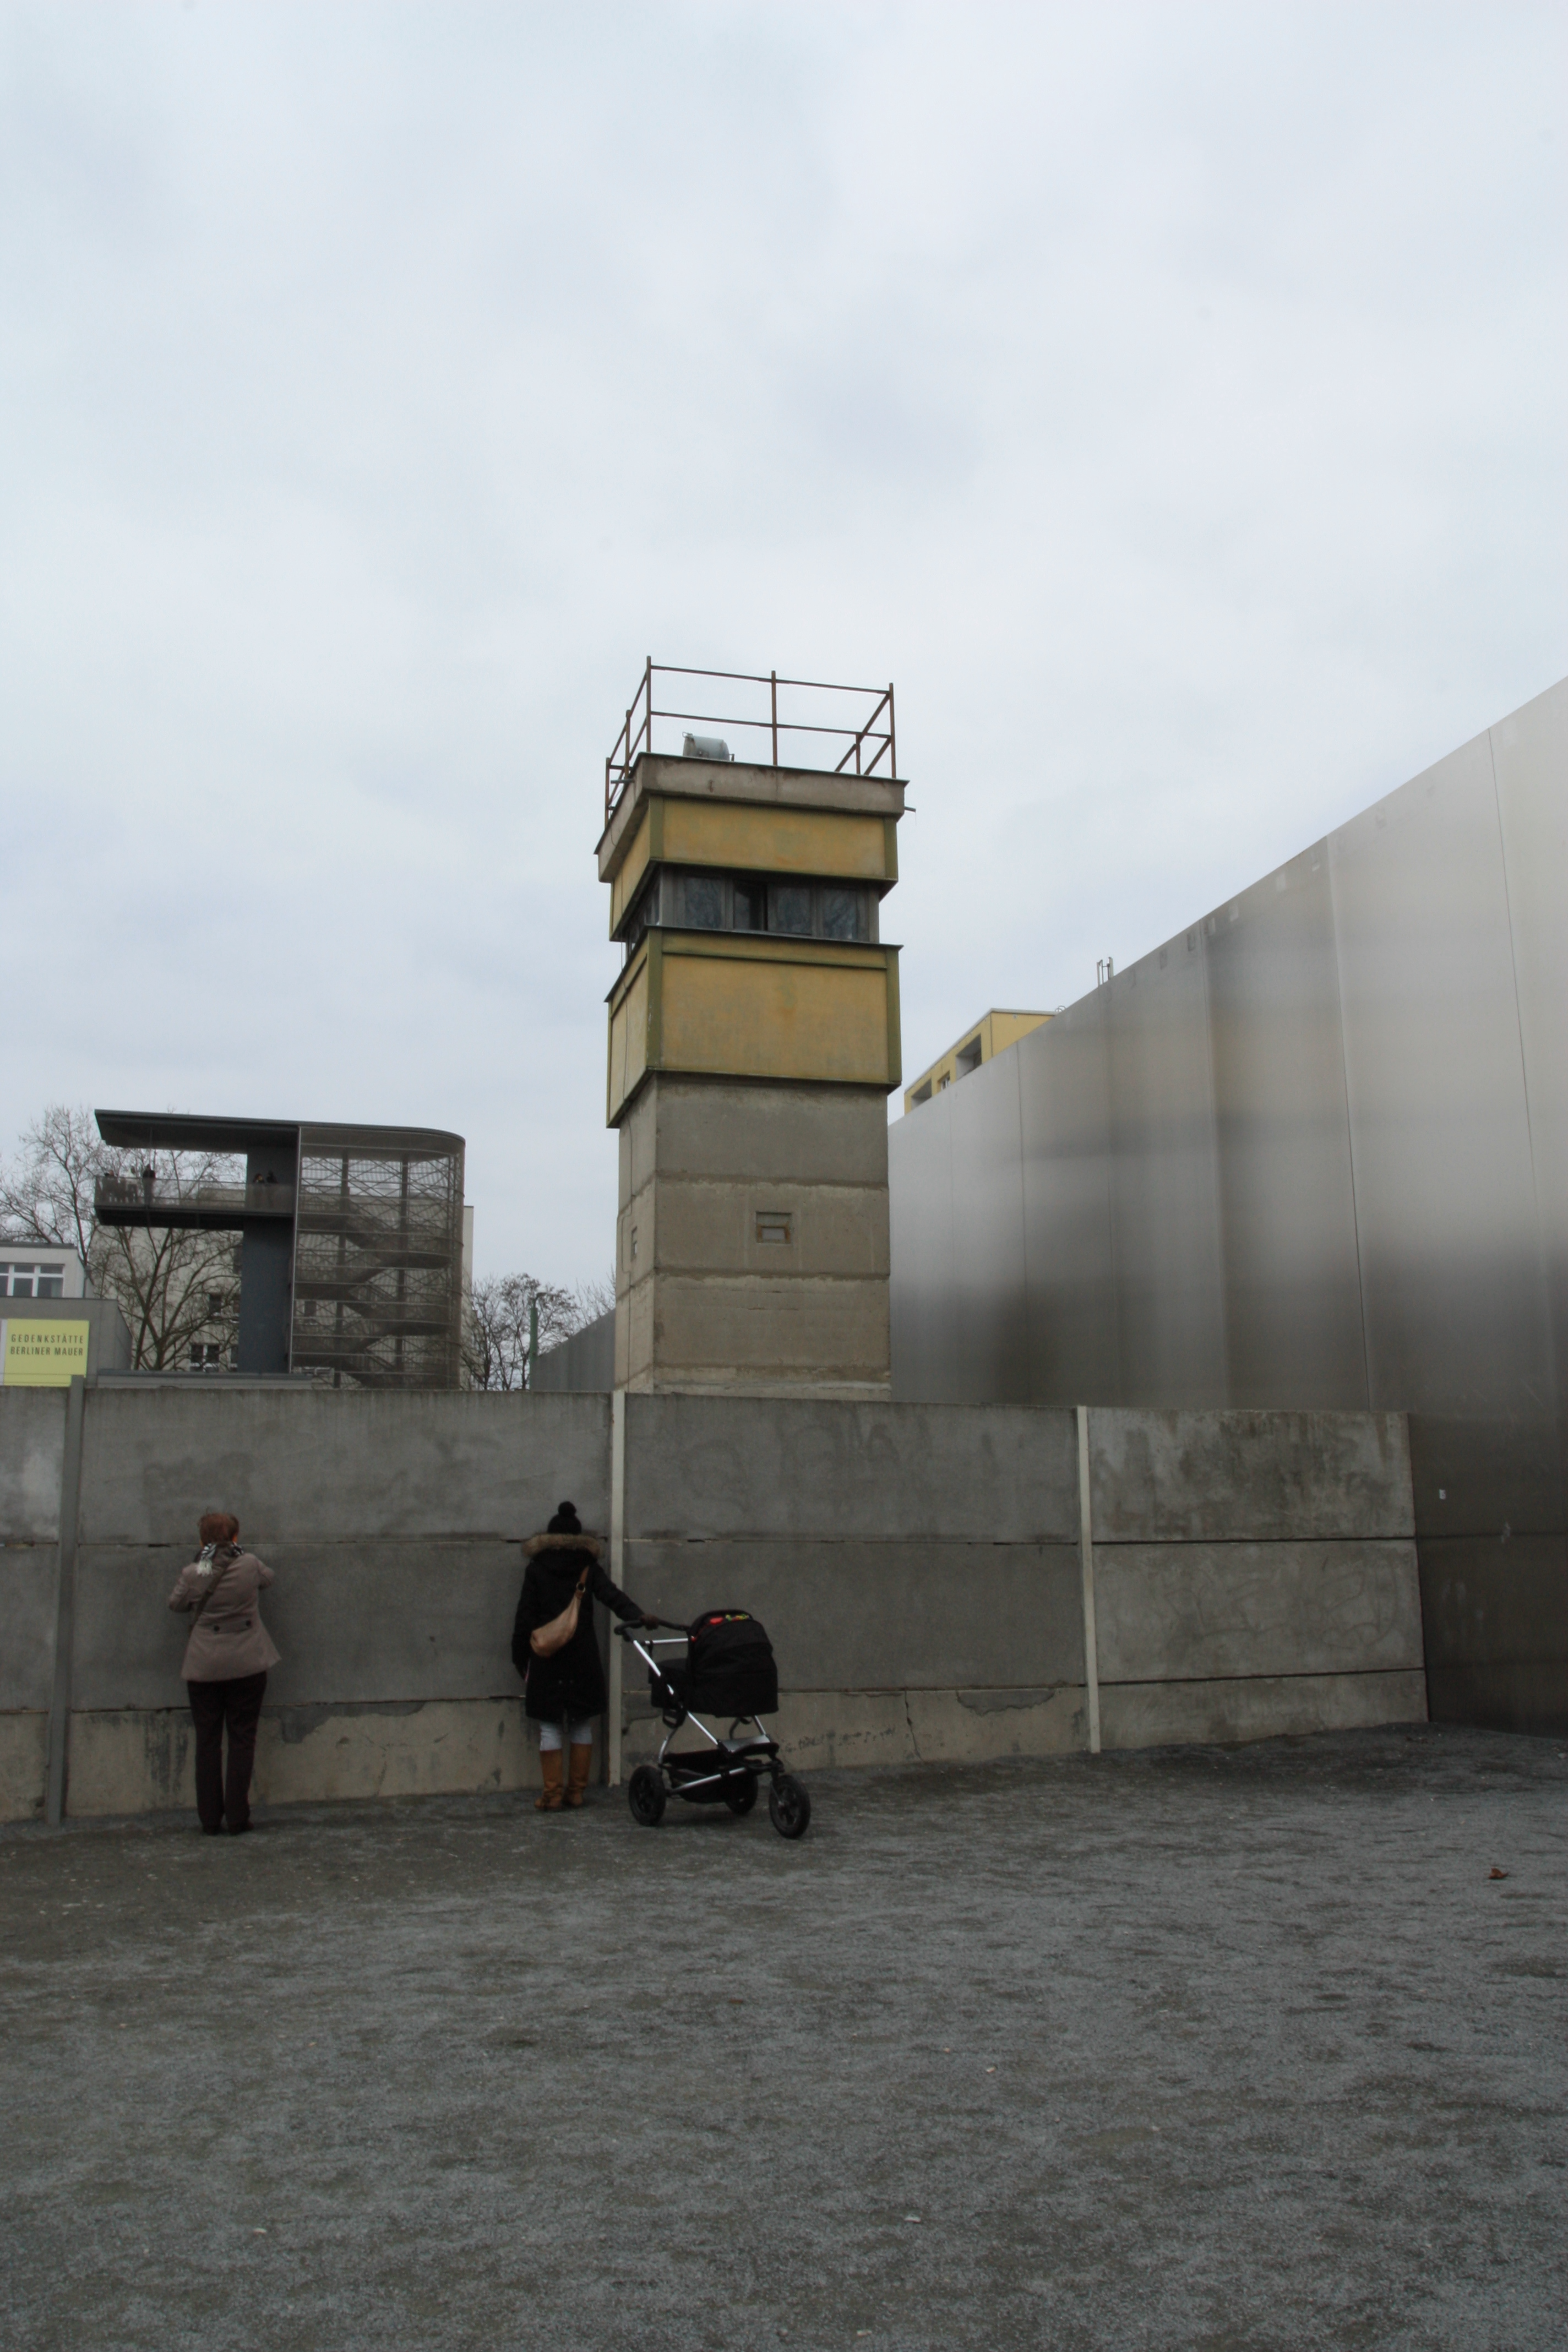 Berlin Wall, 2013